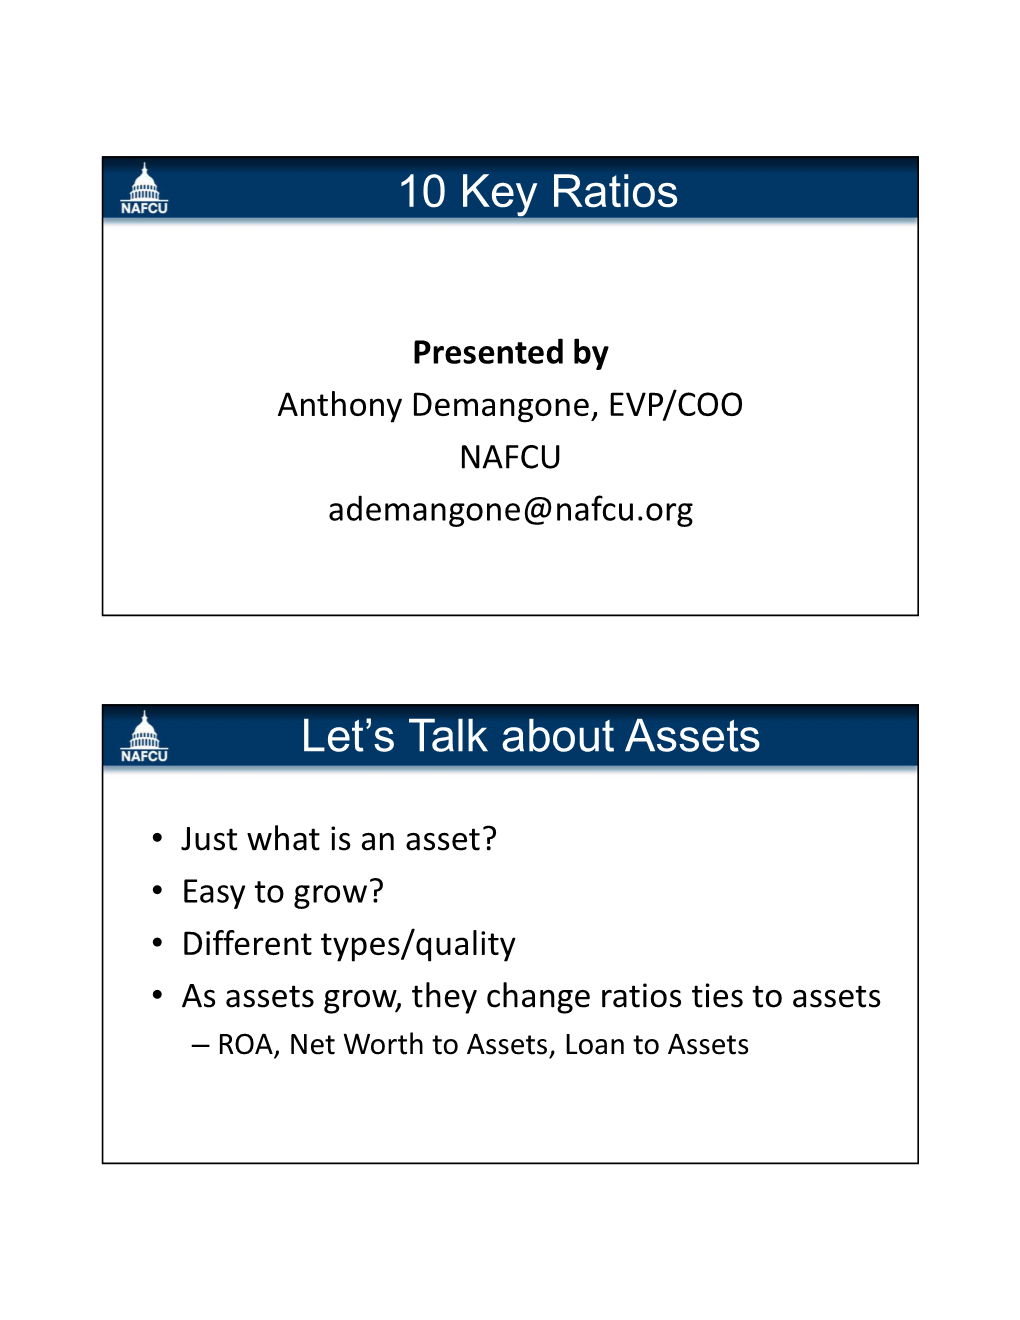 10 Key Ratios Let's Talk About Assets